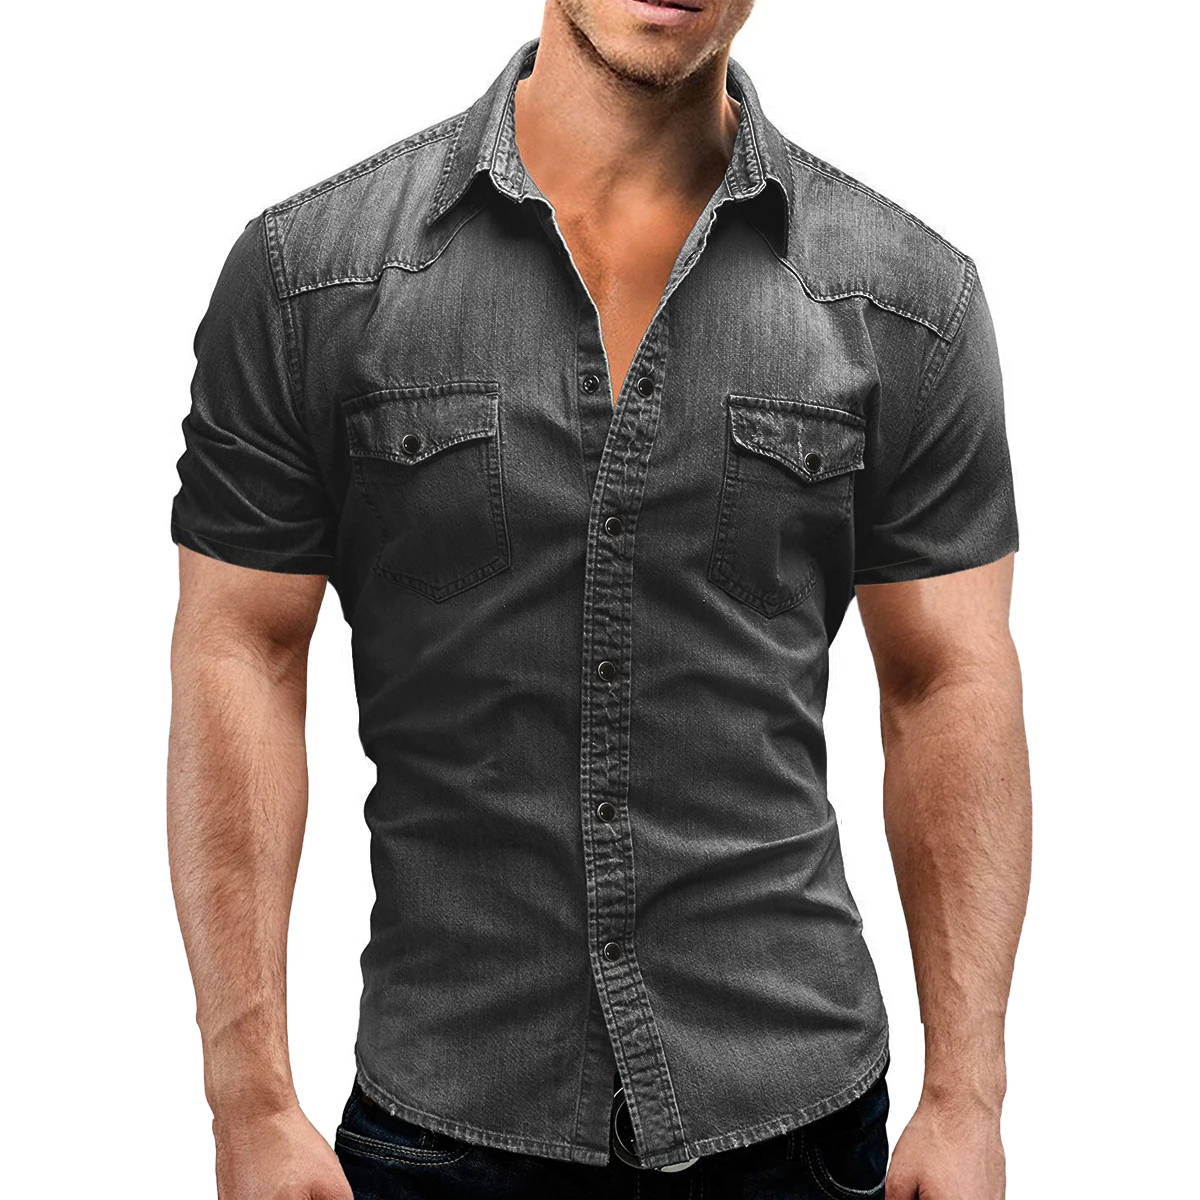 

Джинсовая рубашка мужская с короткими рукавами, Тонкая блузка из мягкого хлопка, Облегающая джинсовая ковбойская рубашка с двумя карманами...